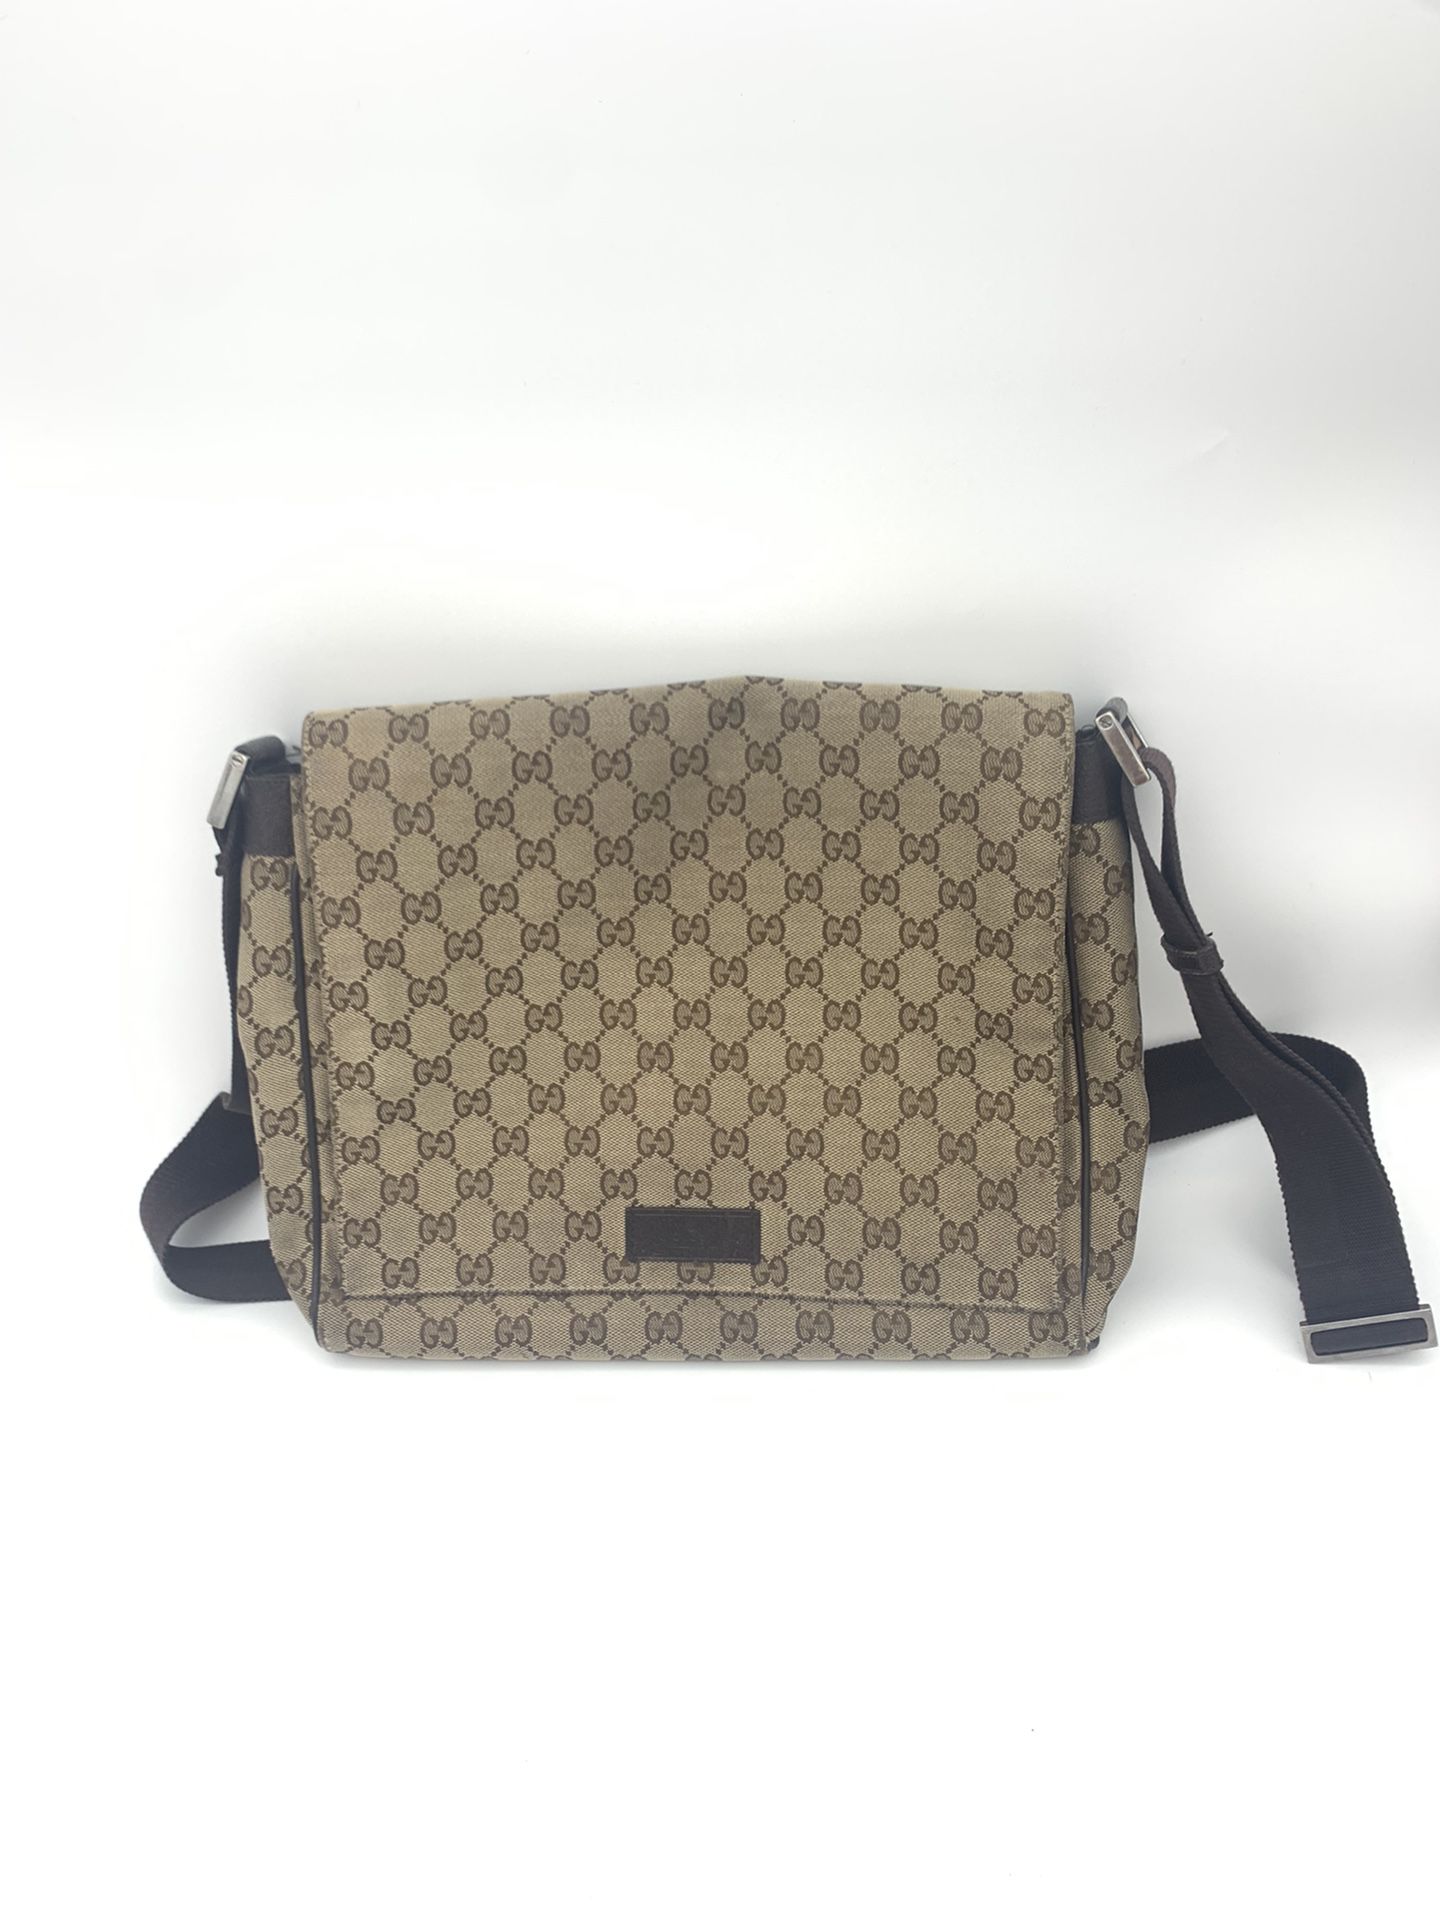 Gucci 146236 Shoulder Pattern Men Women Beige / Brown Gg Canvas / Leather Messenger Bag